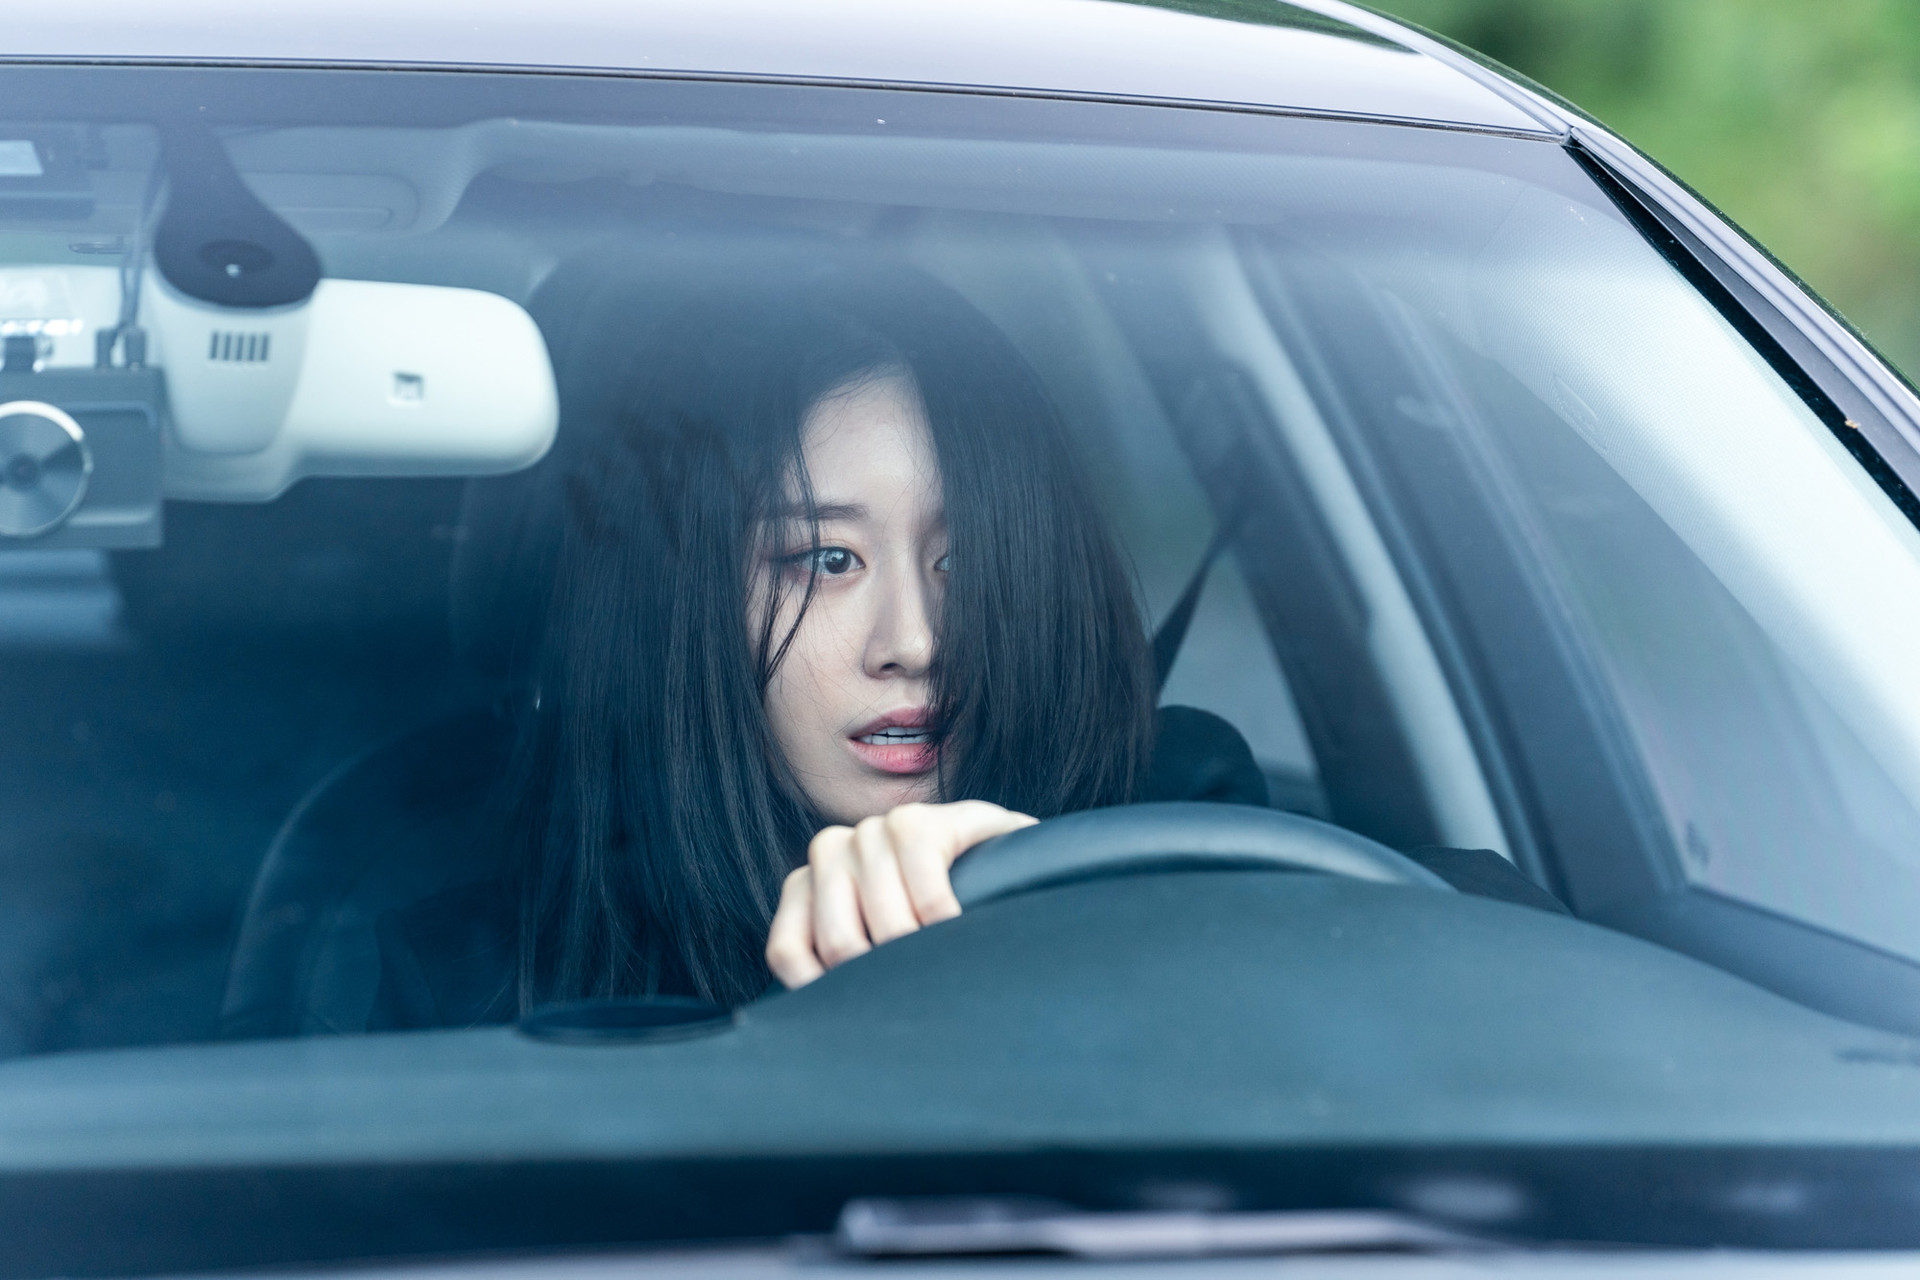 Hào Quang Đẫm Máu: Phim điện ảnh mới của ngọc nữ Ji-yeon | ELLE